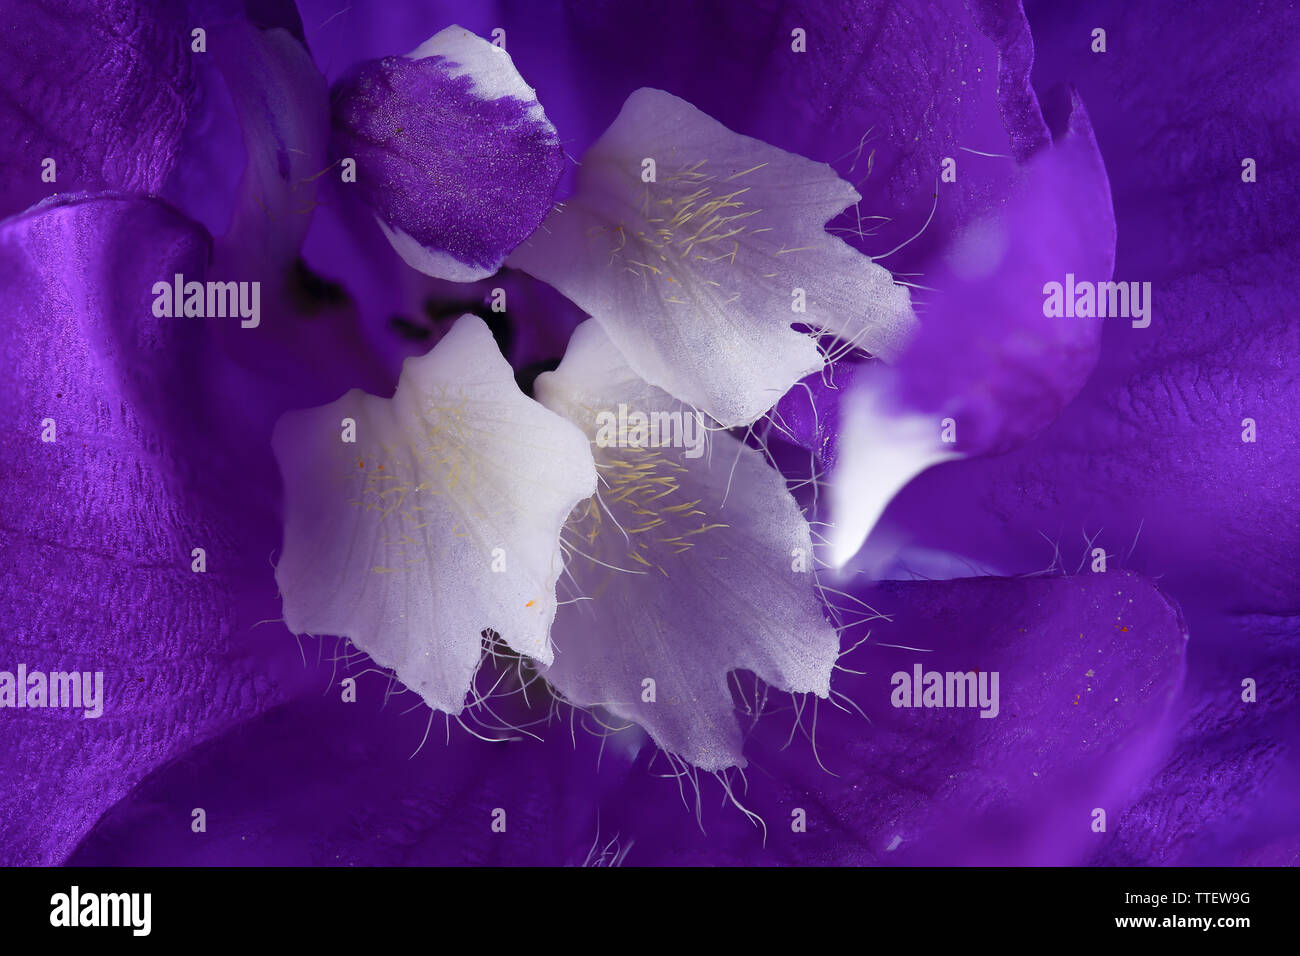 Bellissimo fiore Delphinium close up macro con petali di colore viola e bianco stame con il polline e i peli in alta risoluzione dettaglio Foto Stock